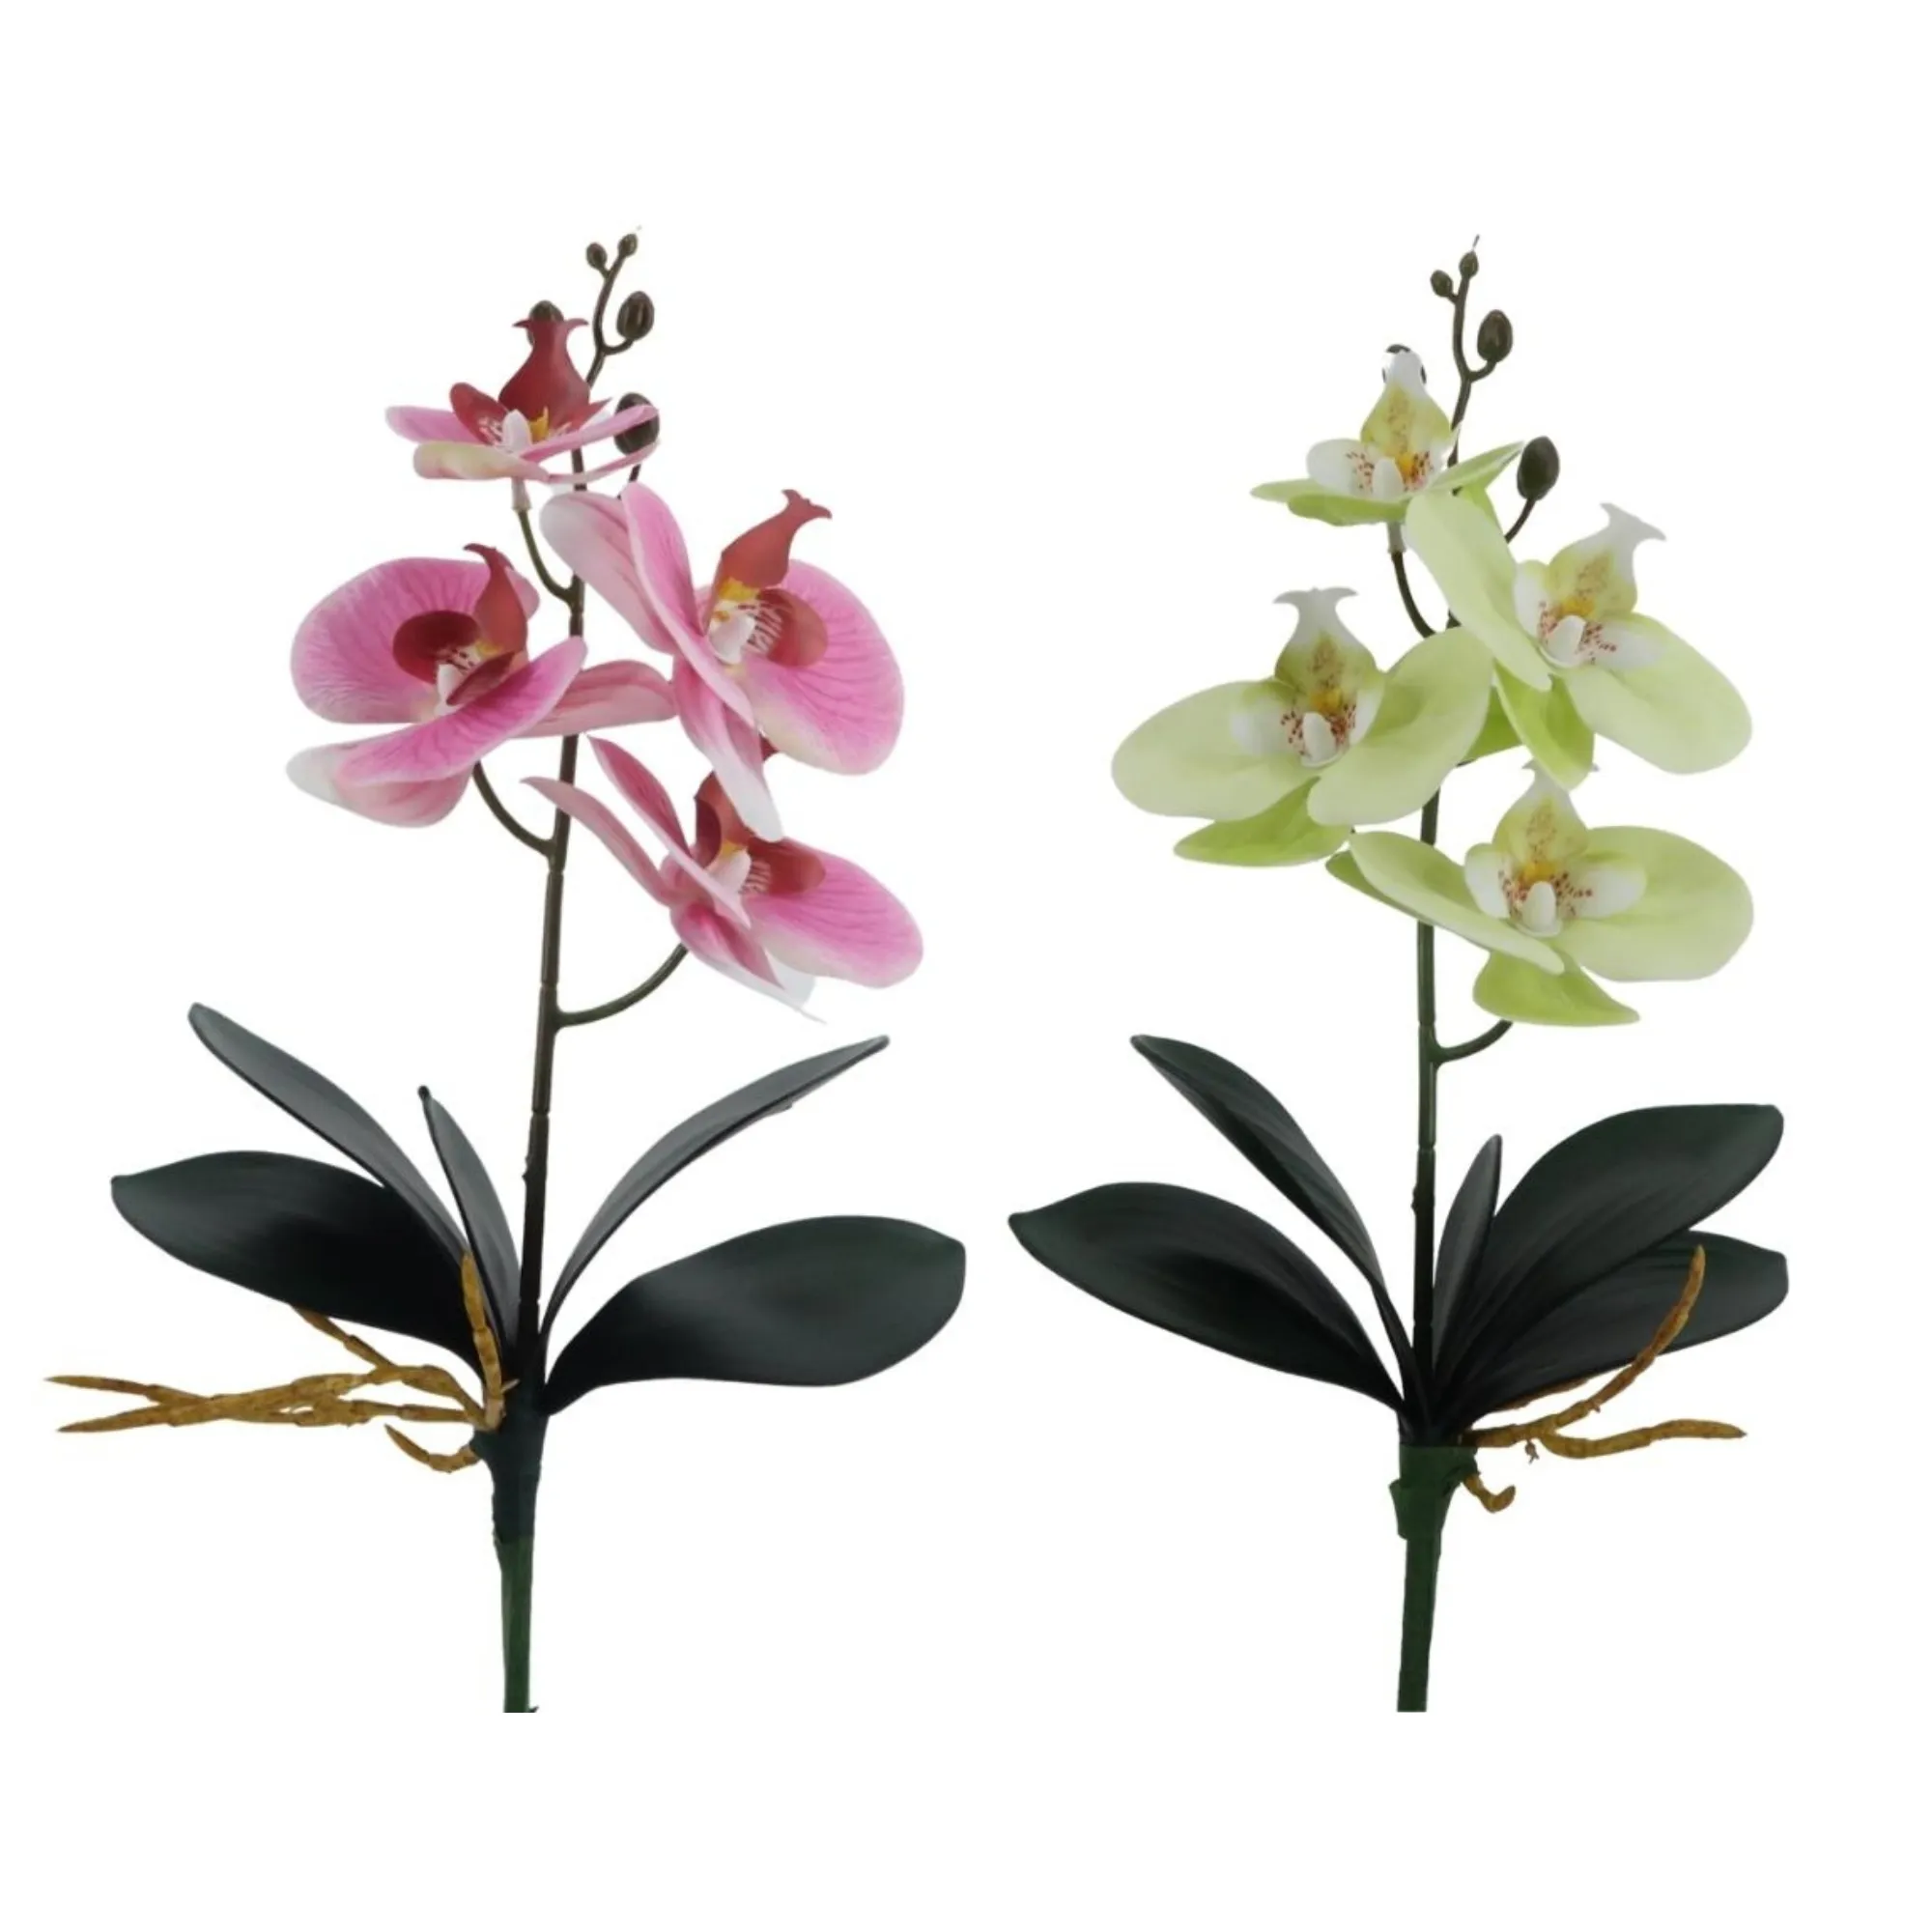 الأكثر مبيعًا زهرة زخرفية زهور فالاينوبسيس الاصطناعية مع أوراق زهور أوركيدس فالاينوبسيس لترتيب الأزهار